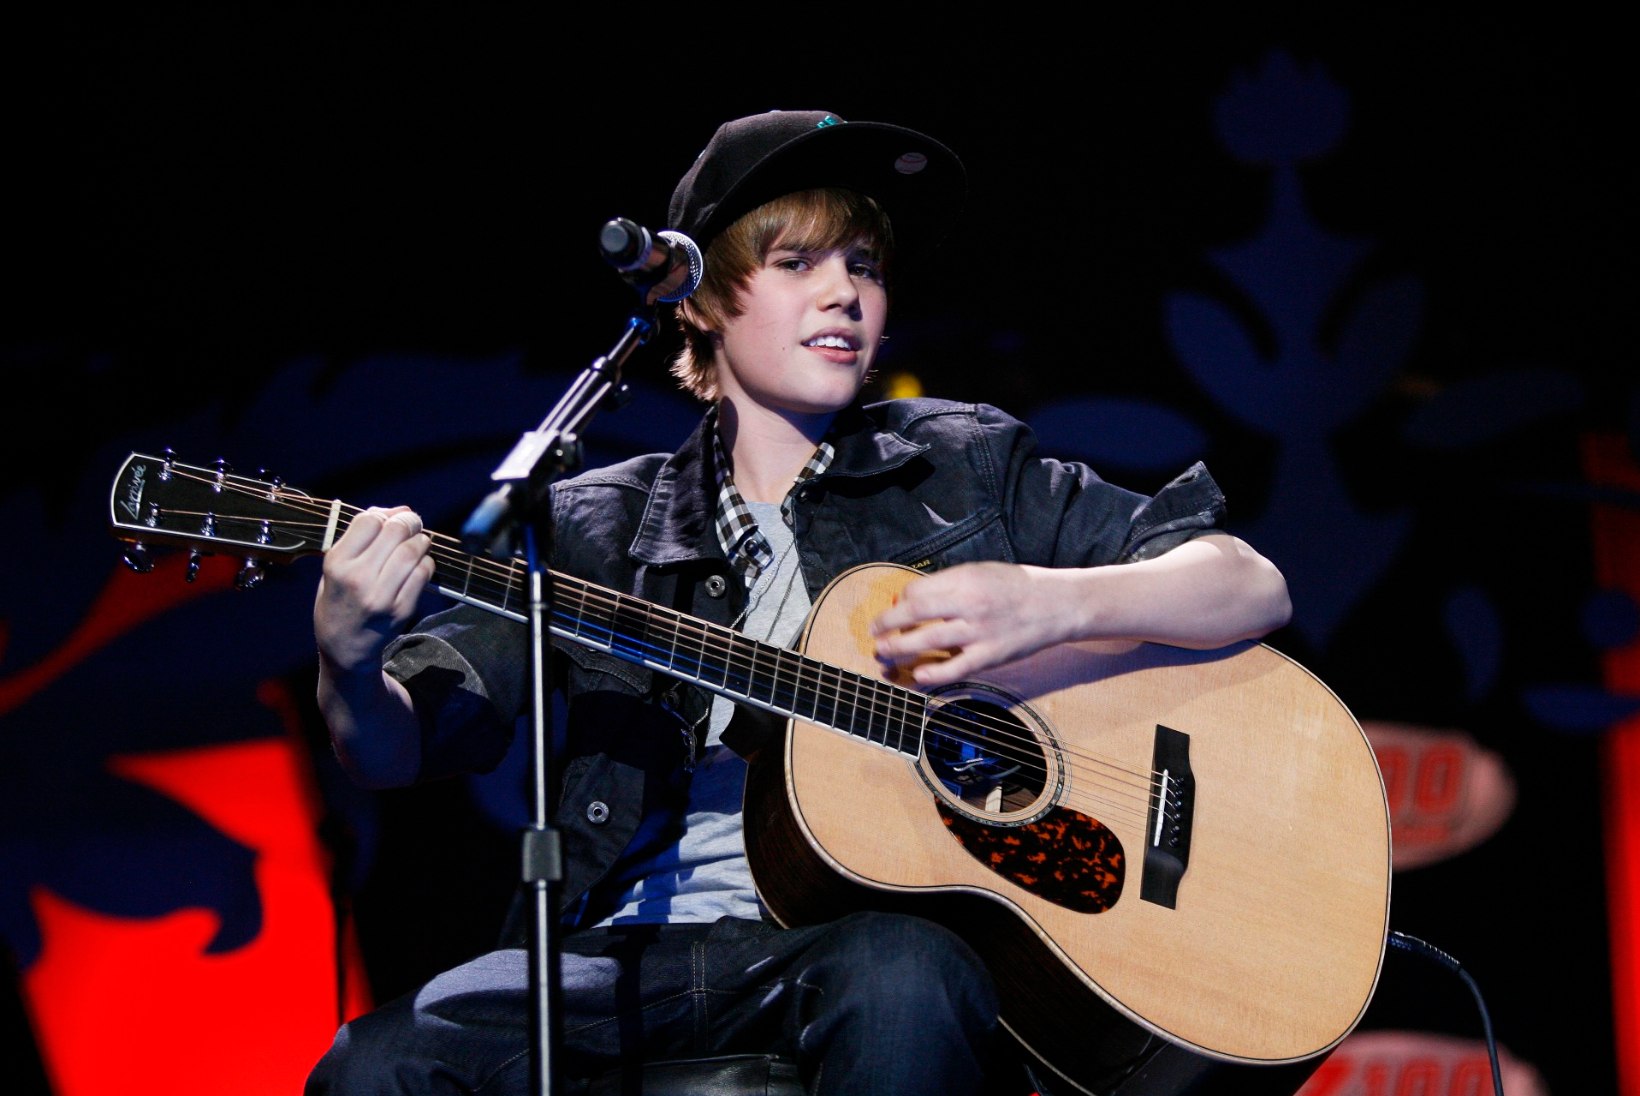 ELUOHTLIK SÕLTUVUS: Bieber alustas 13aastaselt päeva kanepi ja tablettidega